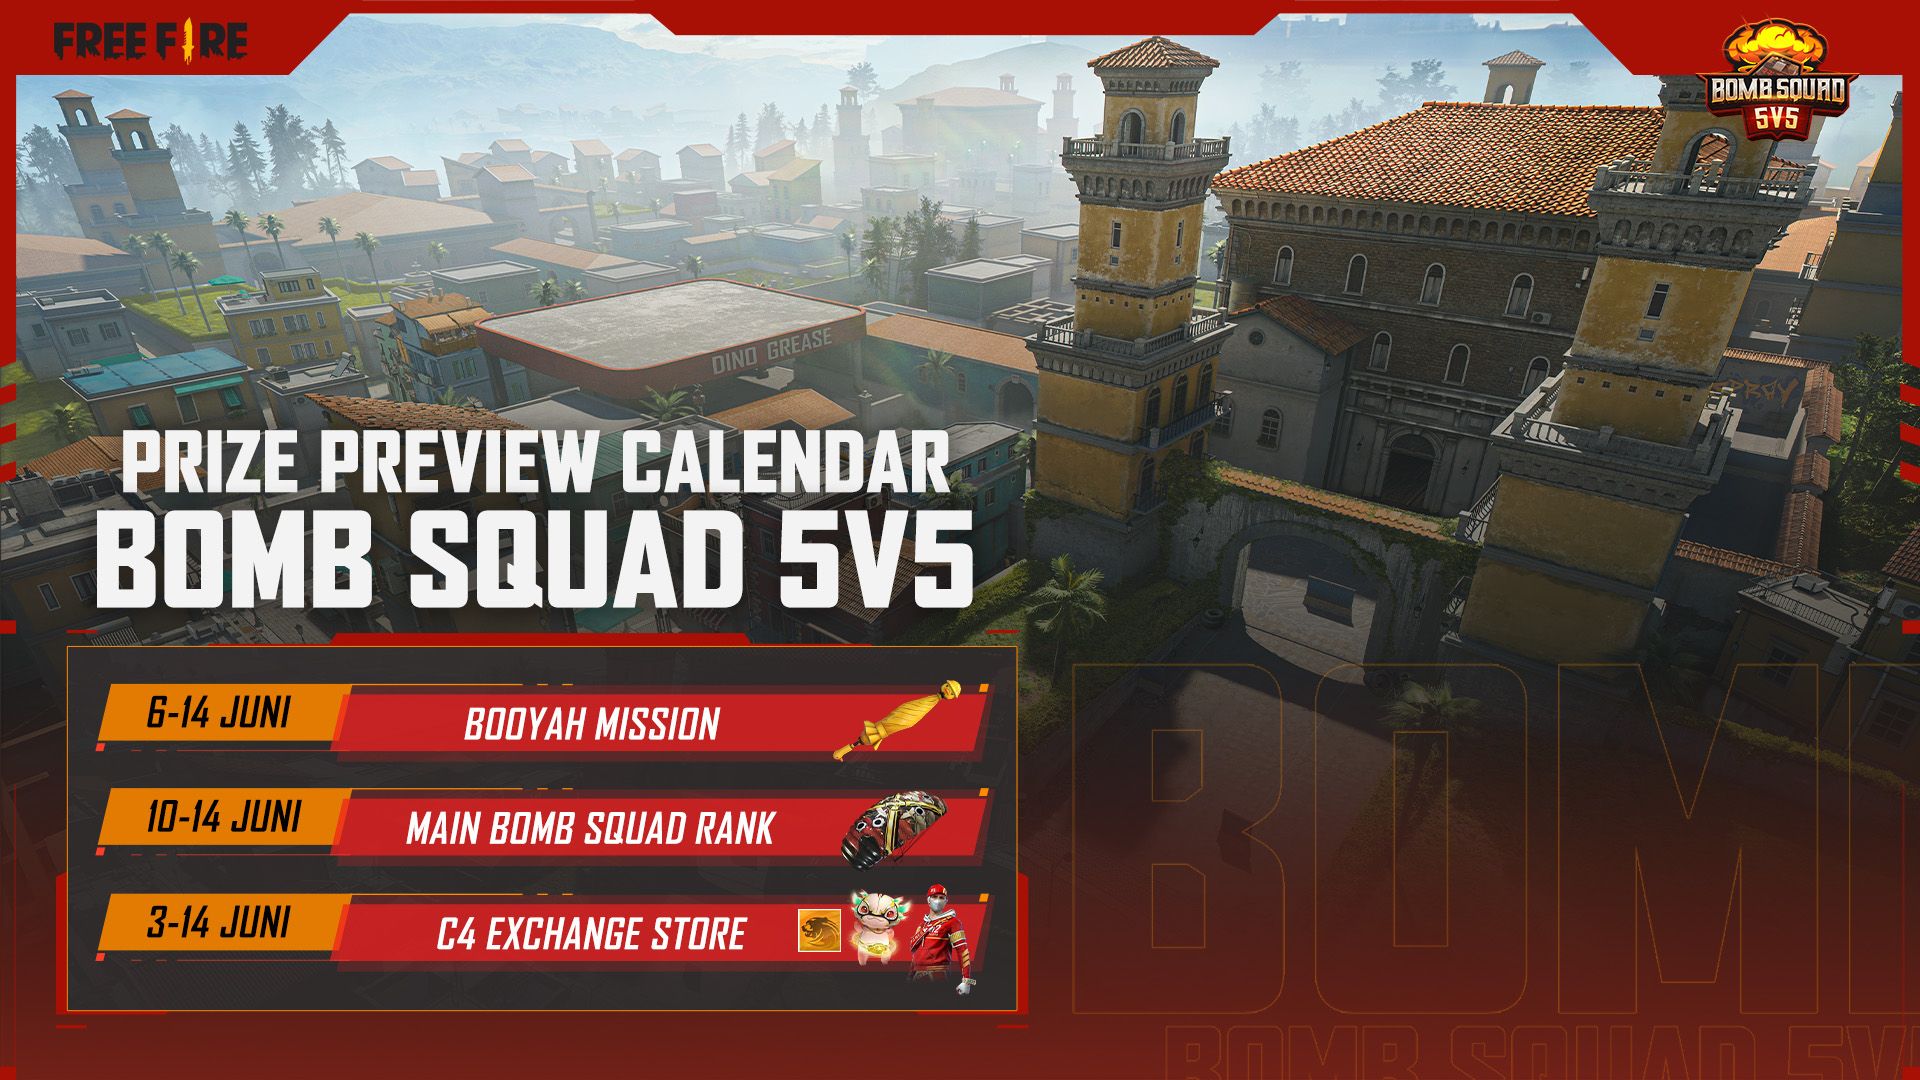 Bomb Squad: 5v5